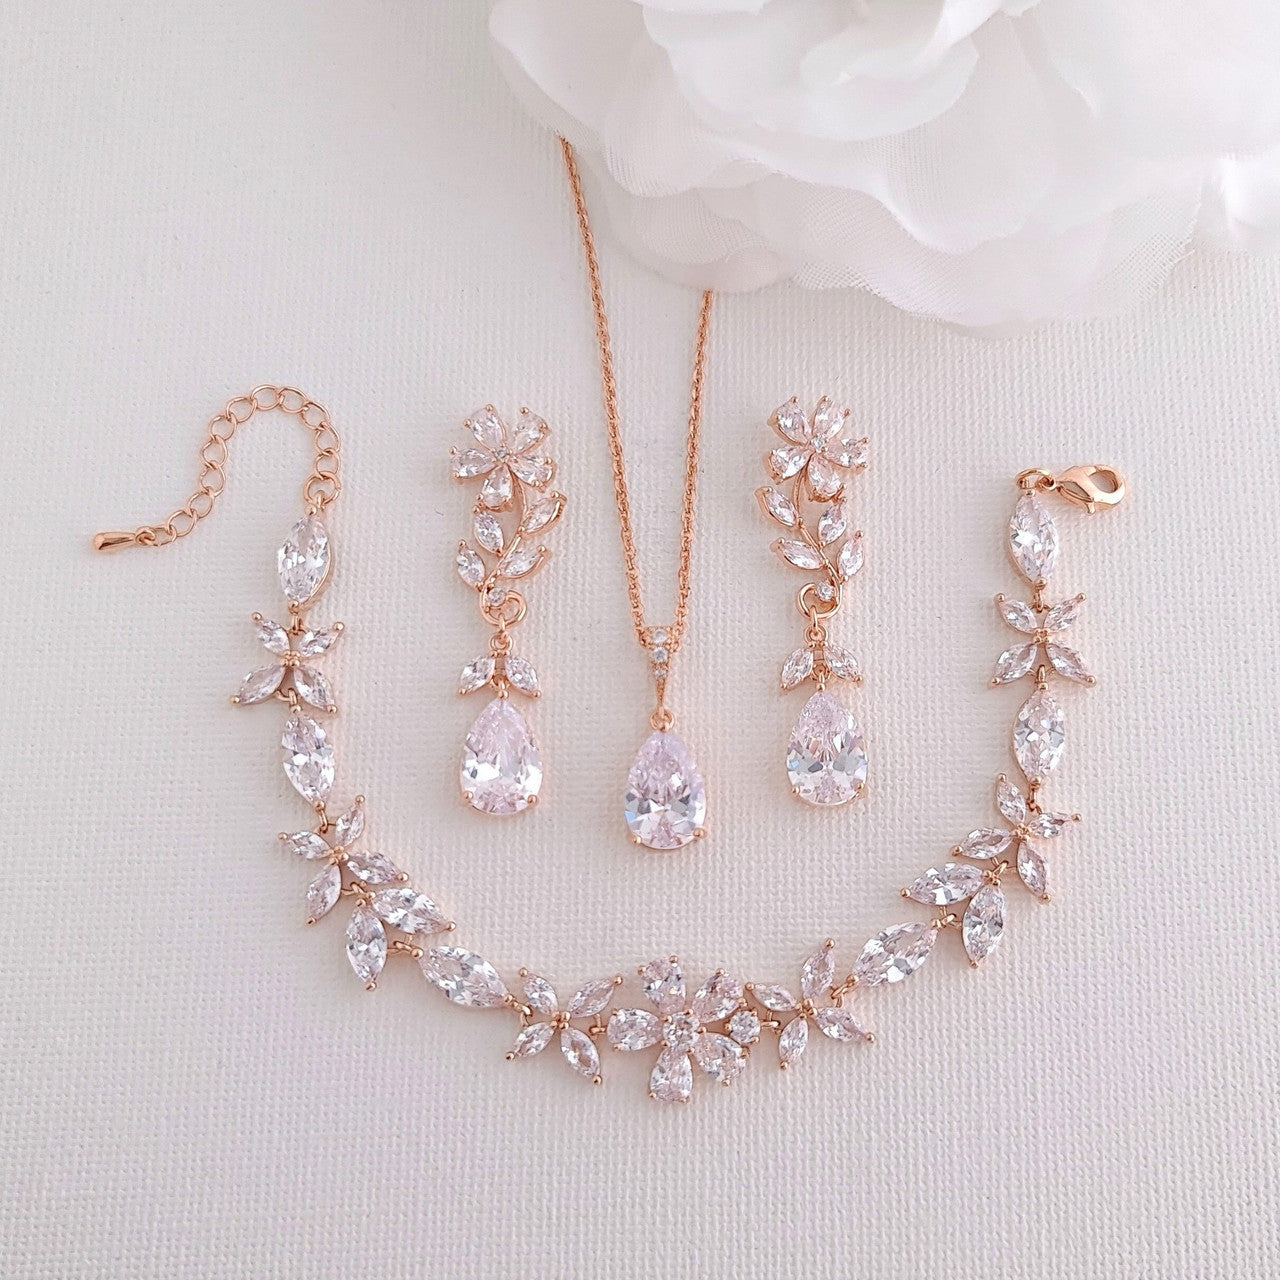 Rose Gold Flower Earrings for Weddings- Daisy